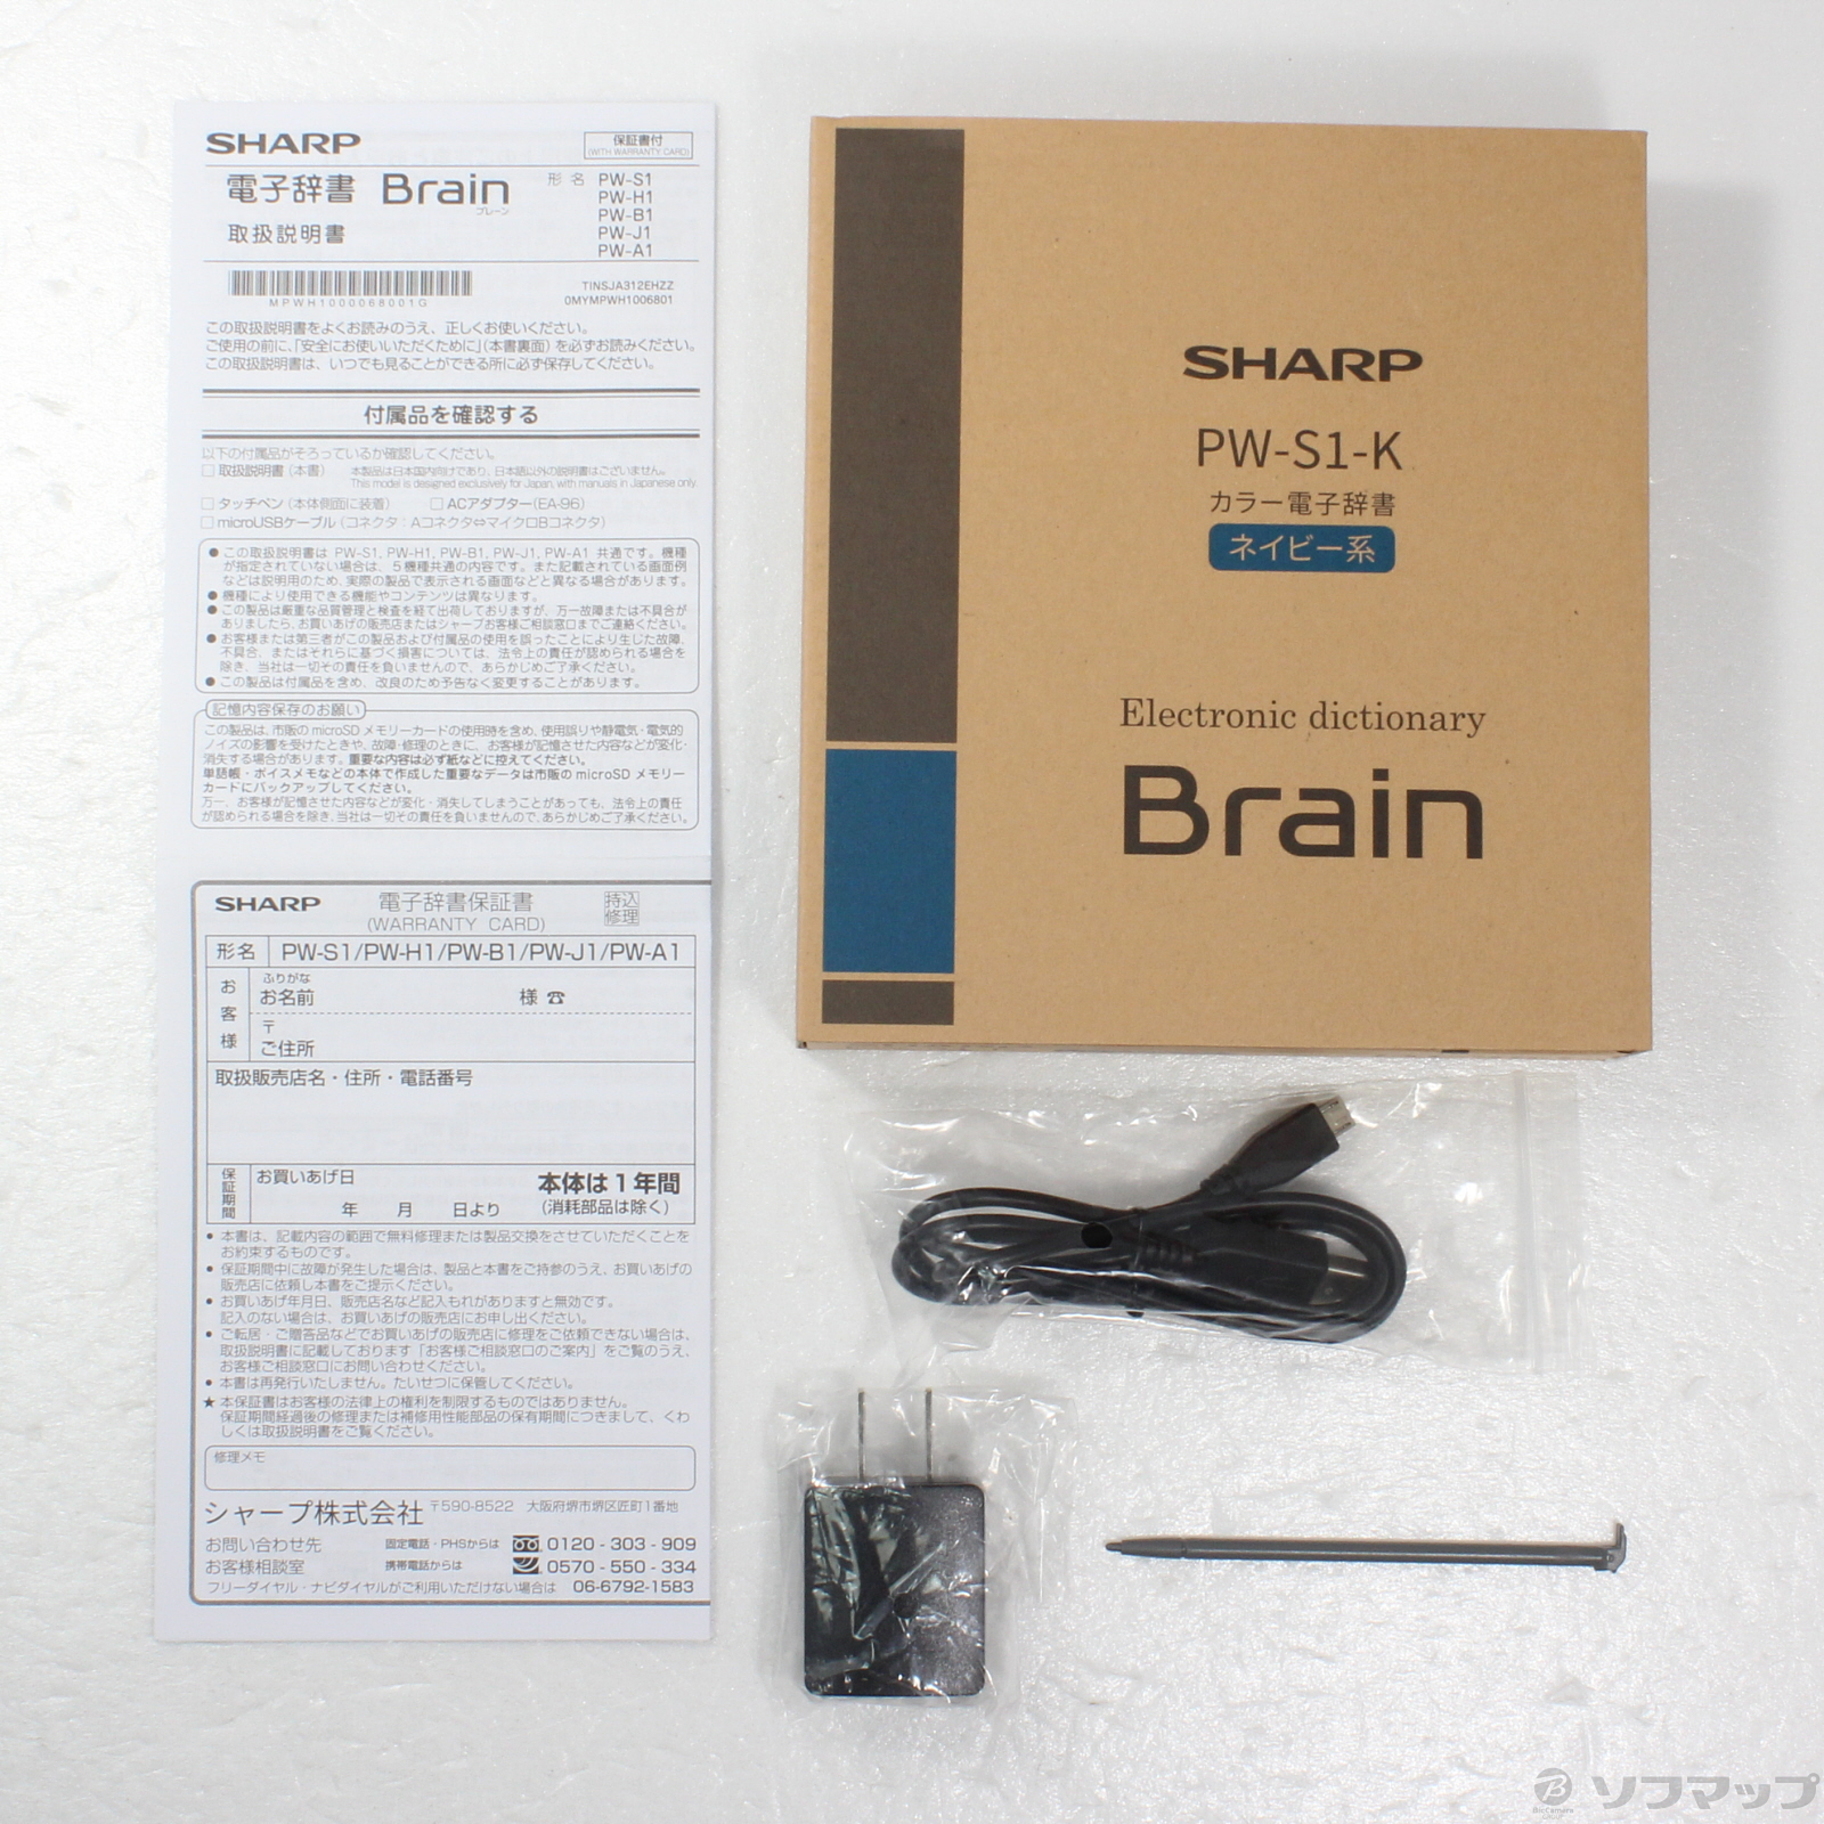 シャープ PW-S1-K カラー電子辞書 Brain 英語強化 高校生モデル ネイビー系 - 2